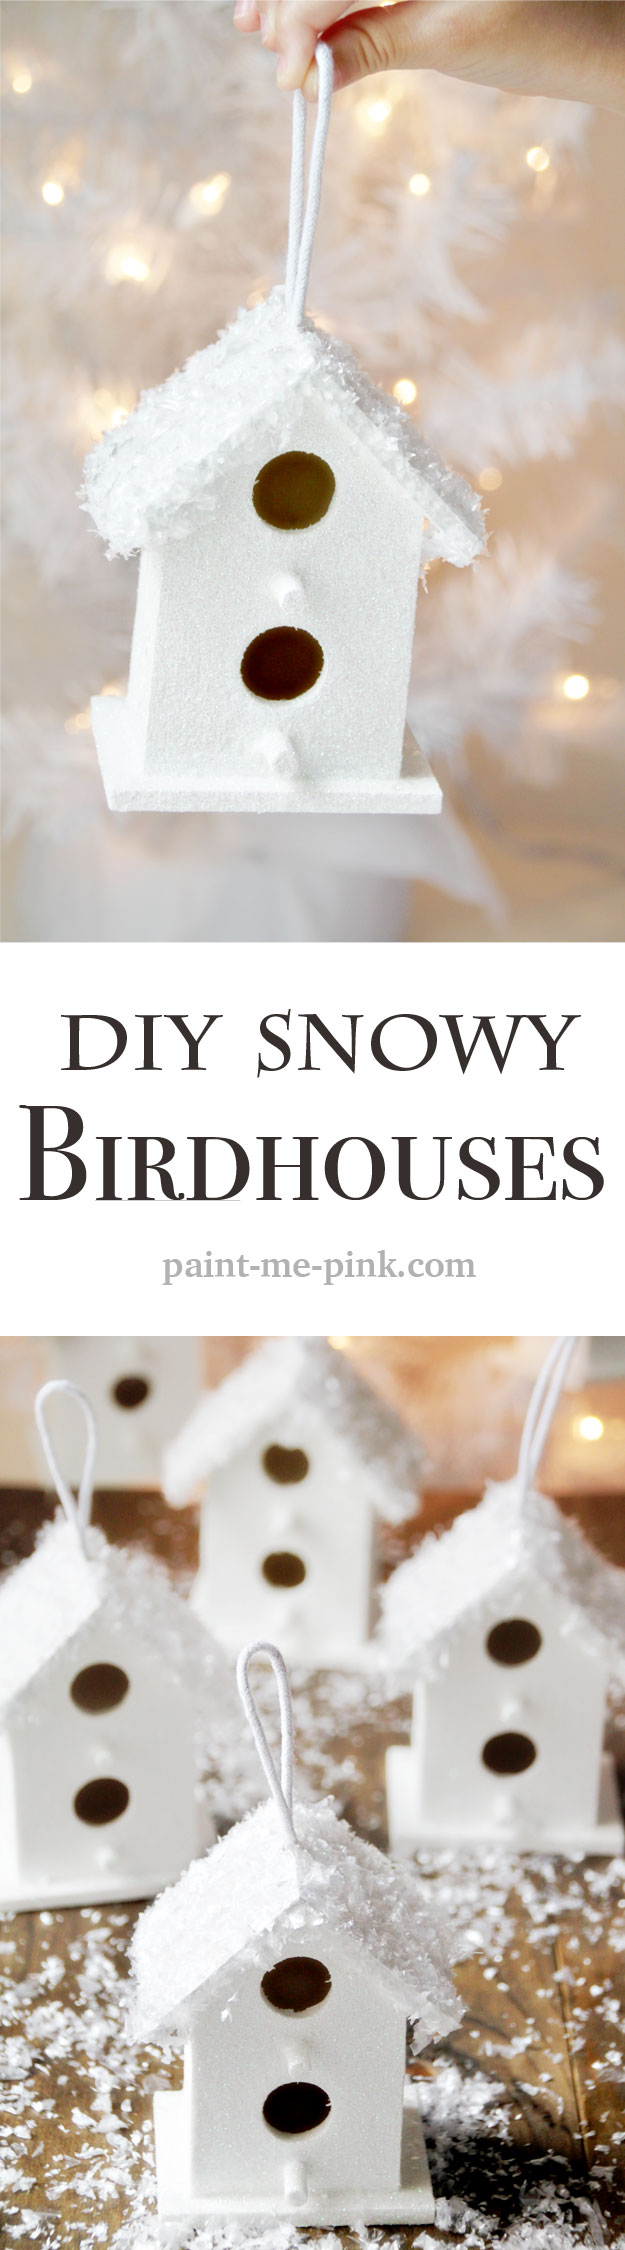 snowy-birdhouse-pin